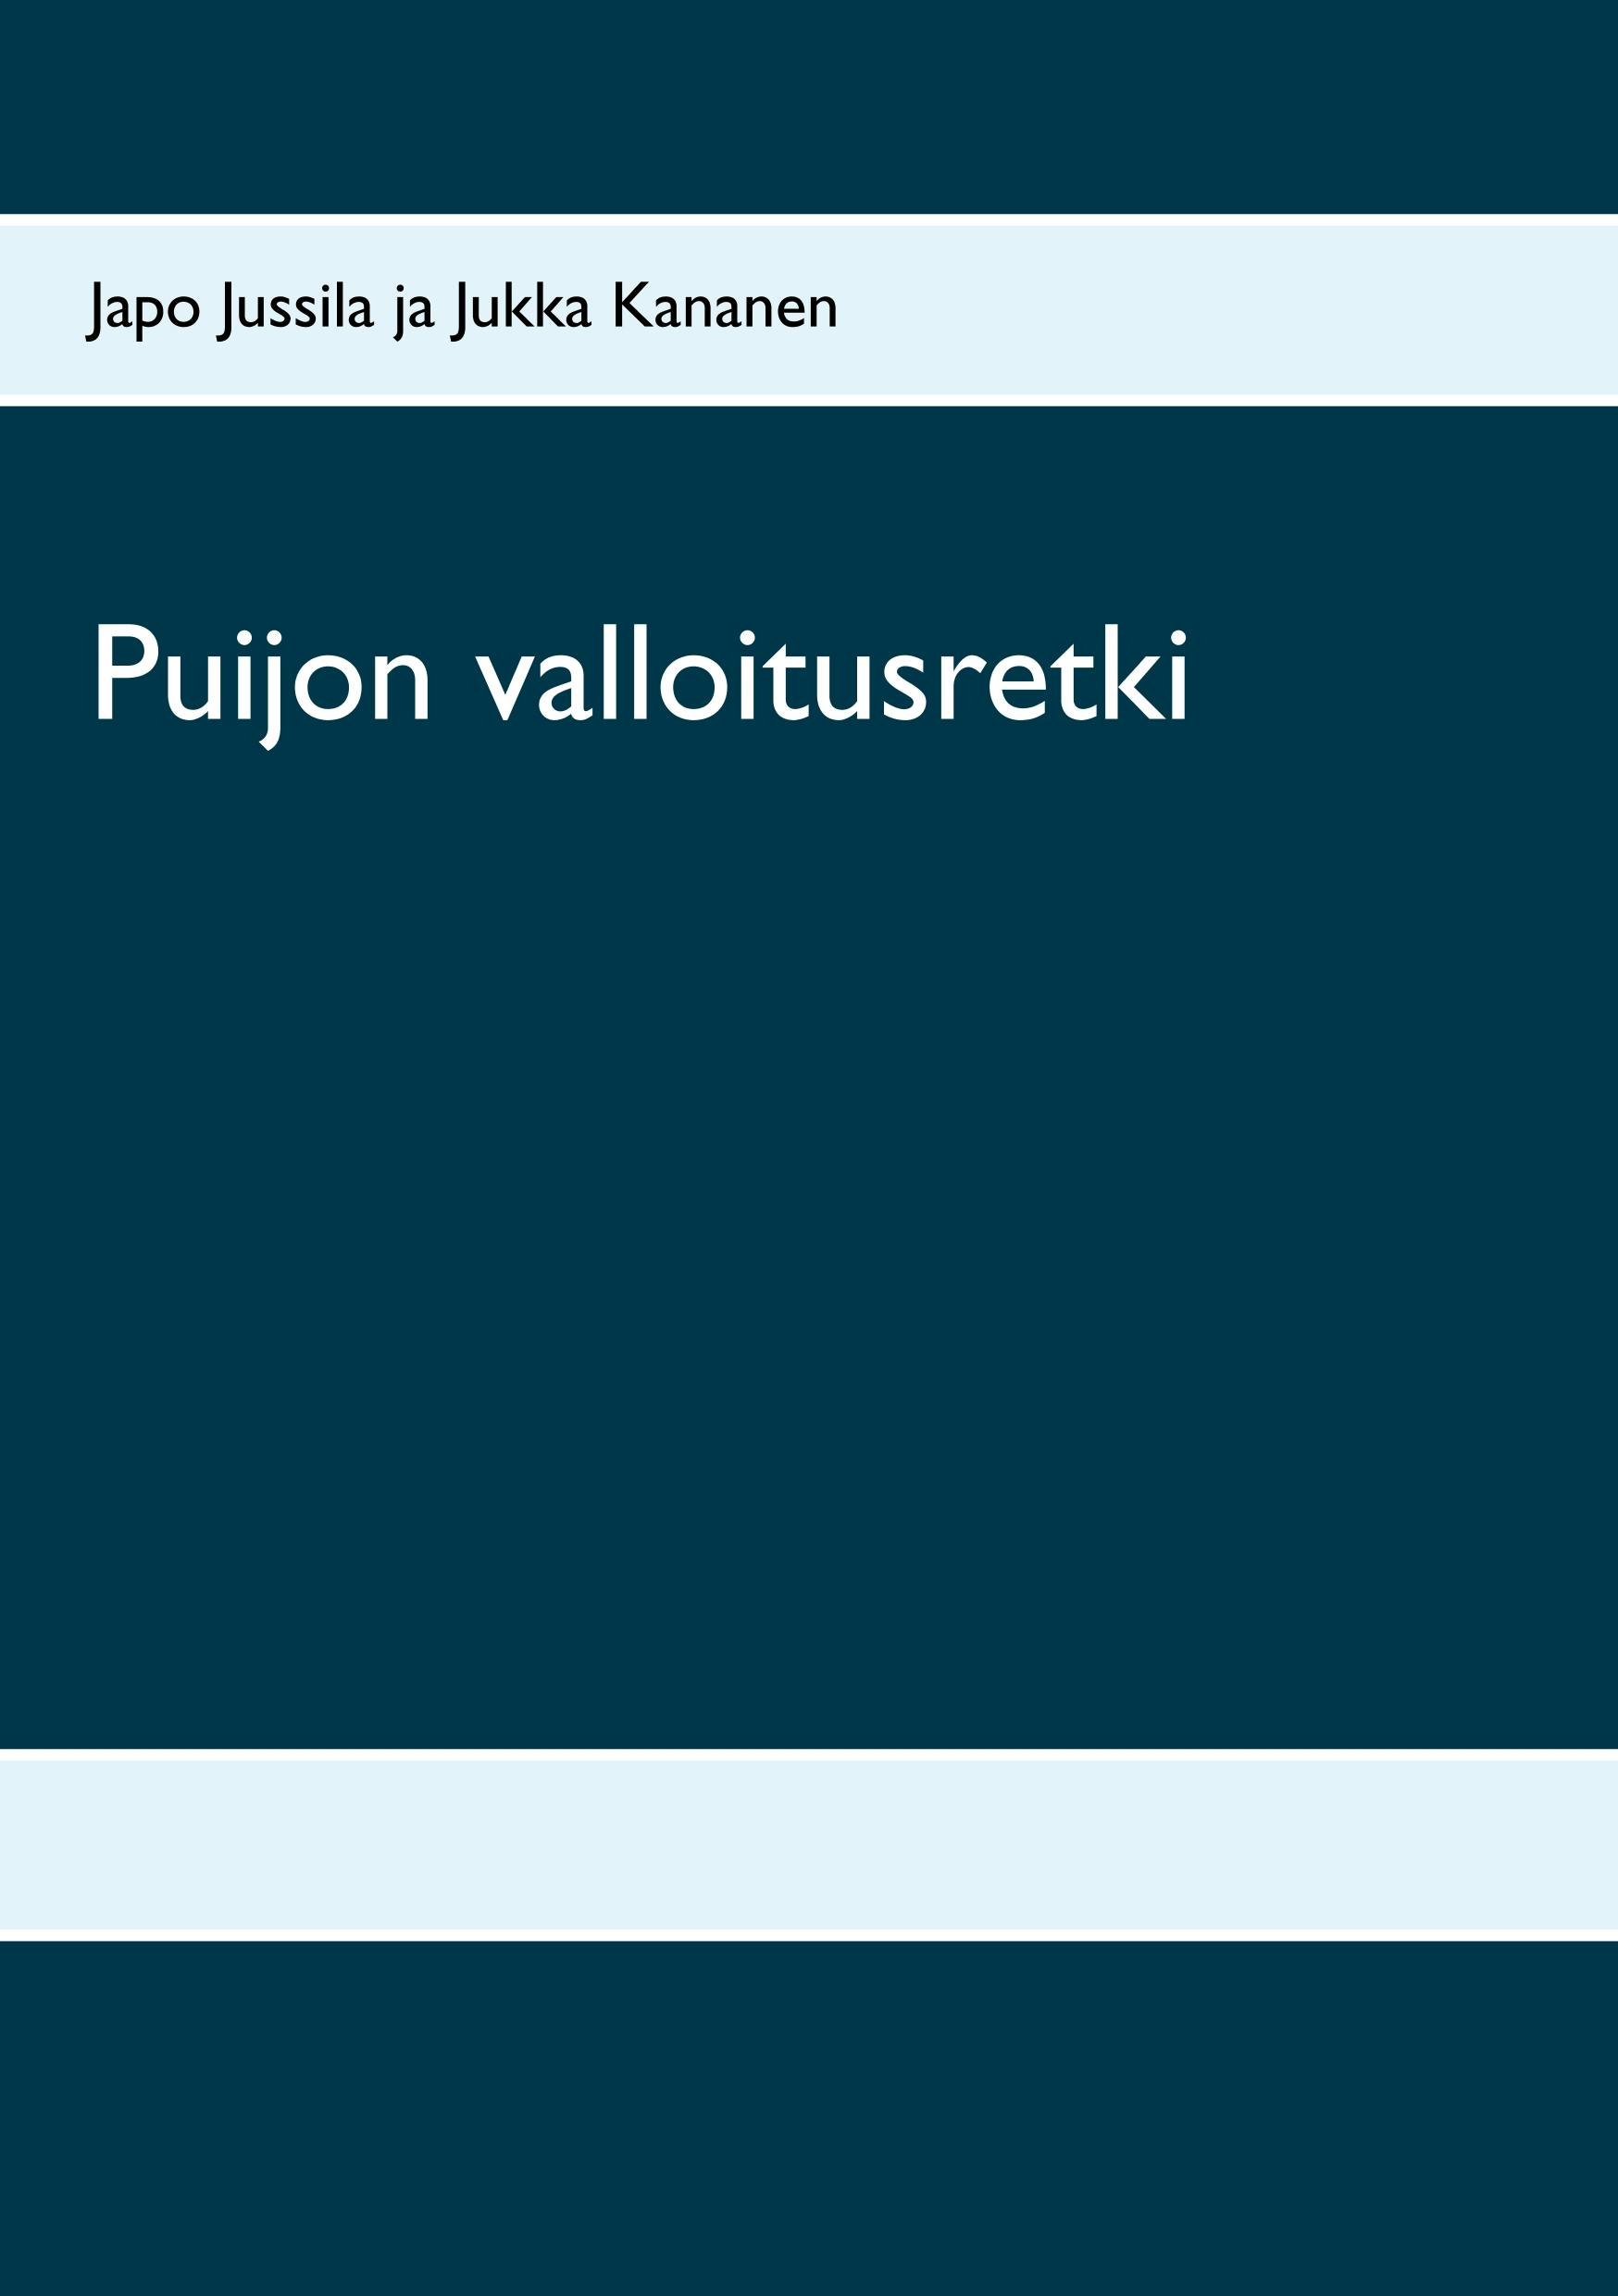 Puijon valloitusretki - Jukka Kananen, Japo Jussila